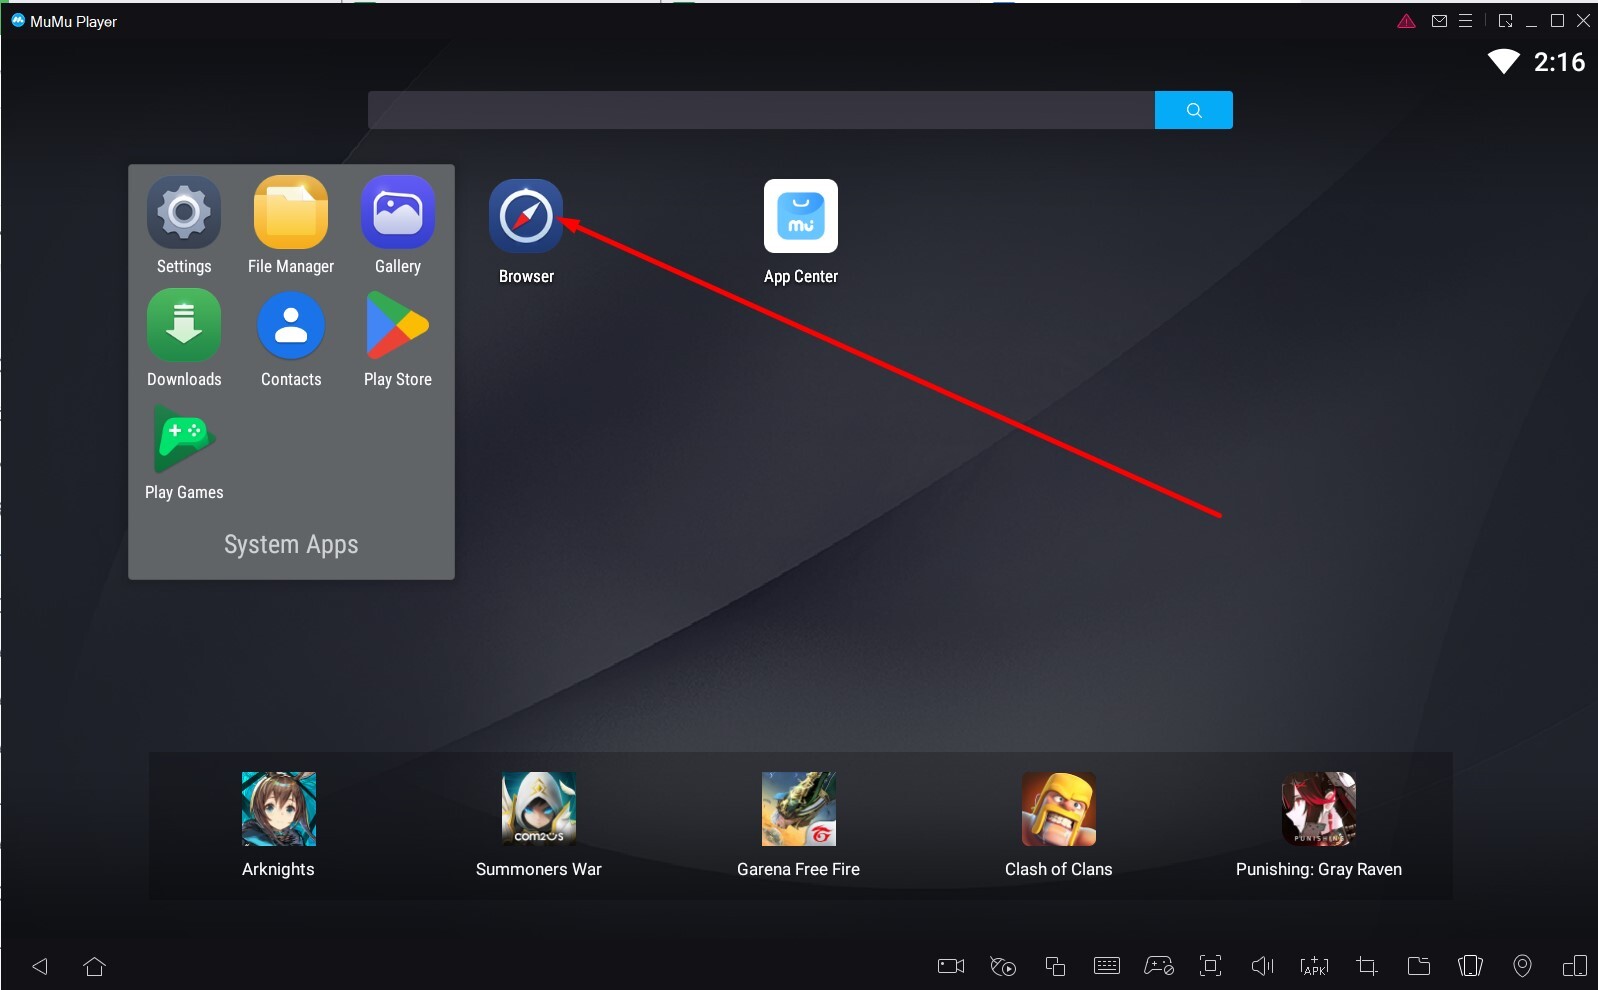 Anh em chọn mục Browser để tiếp tục quá trình cài app 11bet trên Laptop / Máy tính / PC bằng Mumu Player giả lập Android